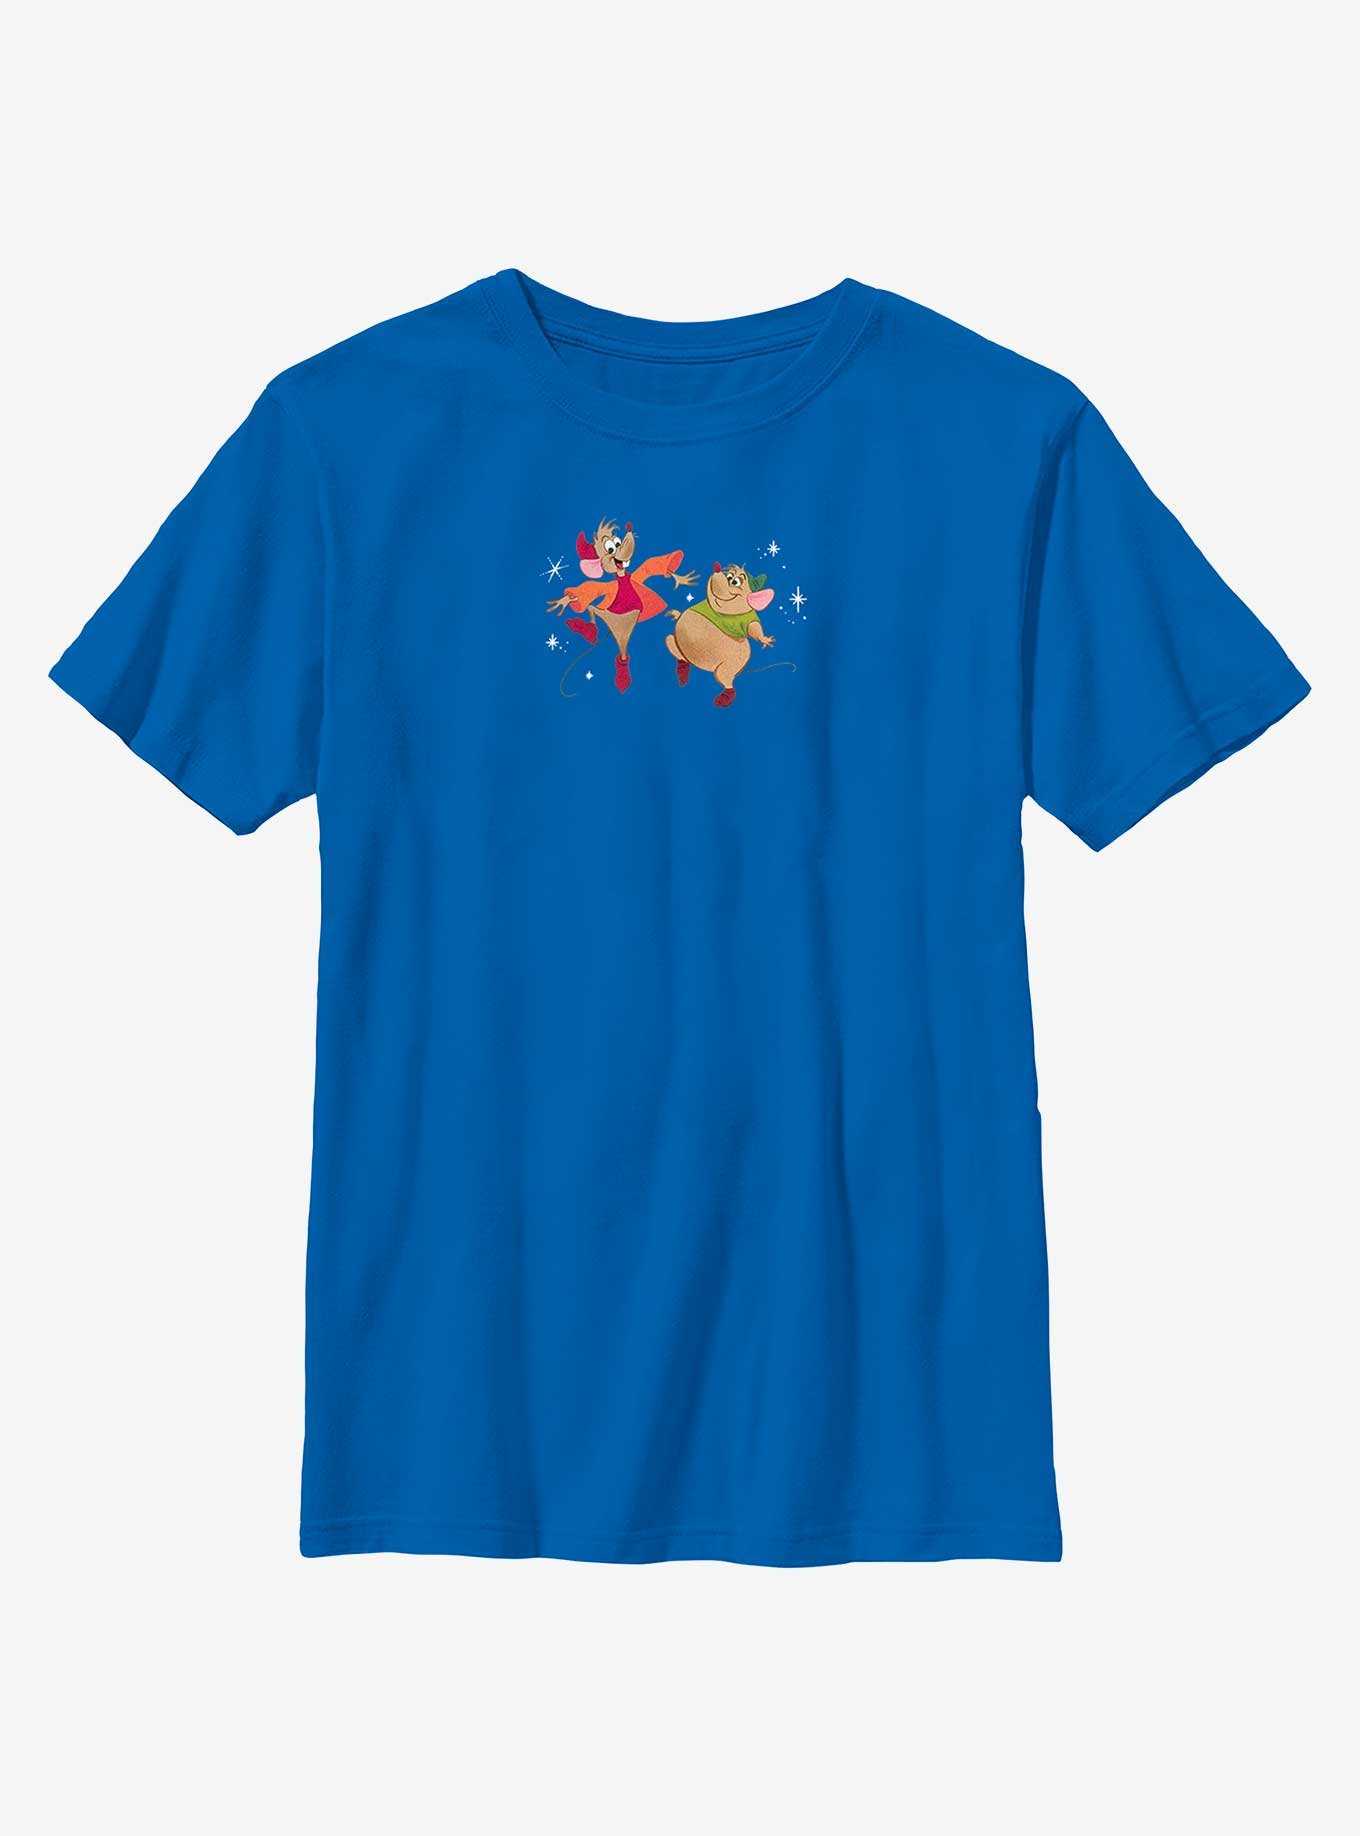 Disney Cinderella Jaq And Gus Dancing Youth T-Shirt, , hi-res